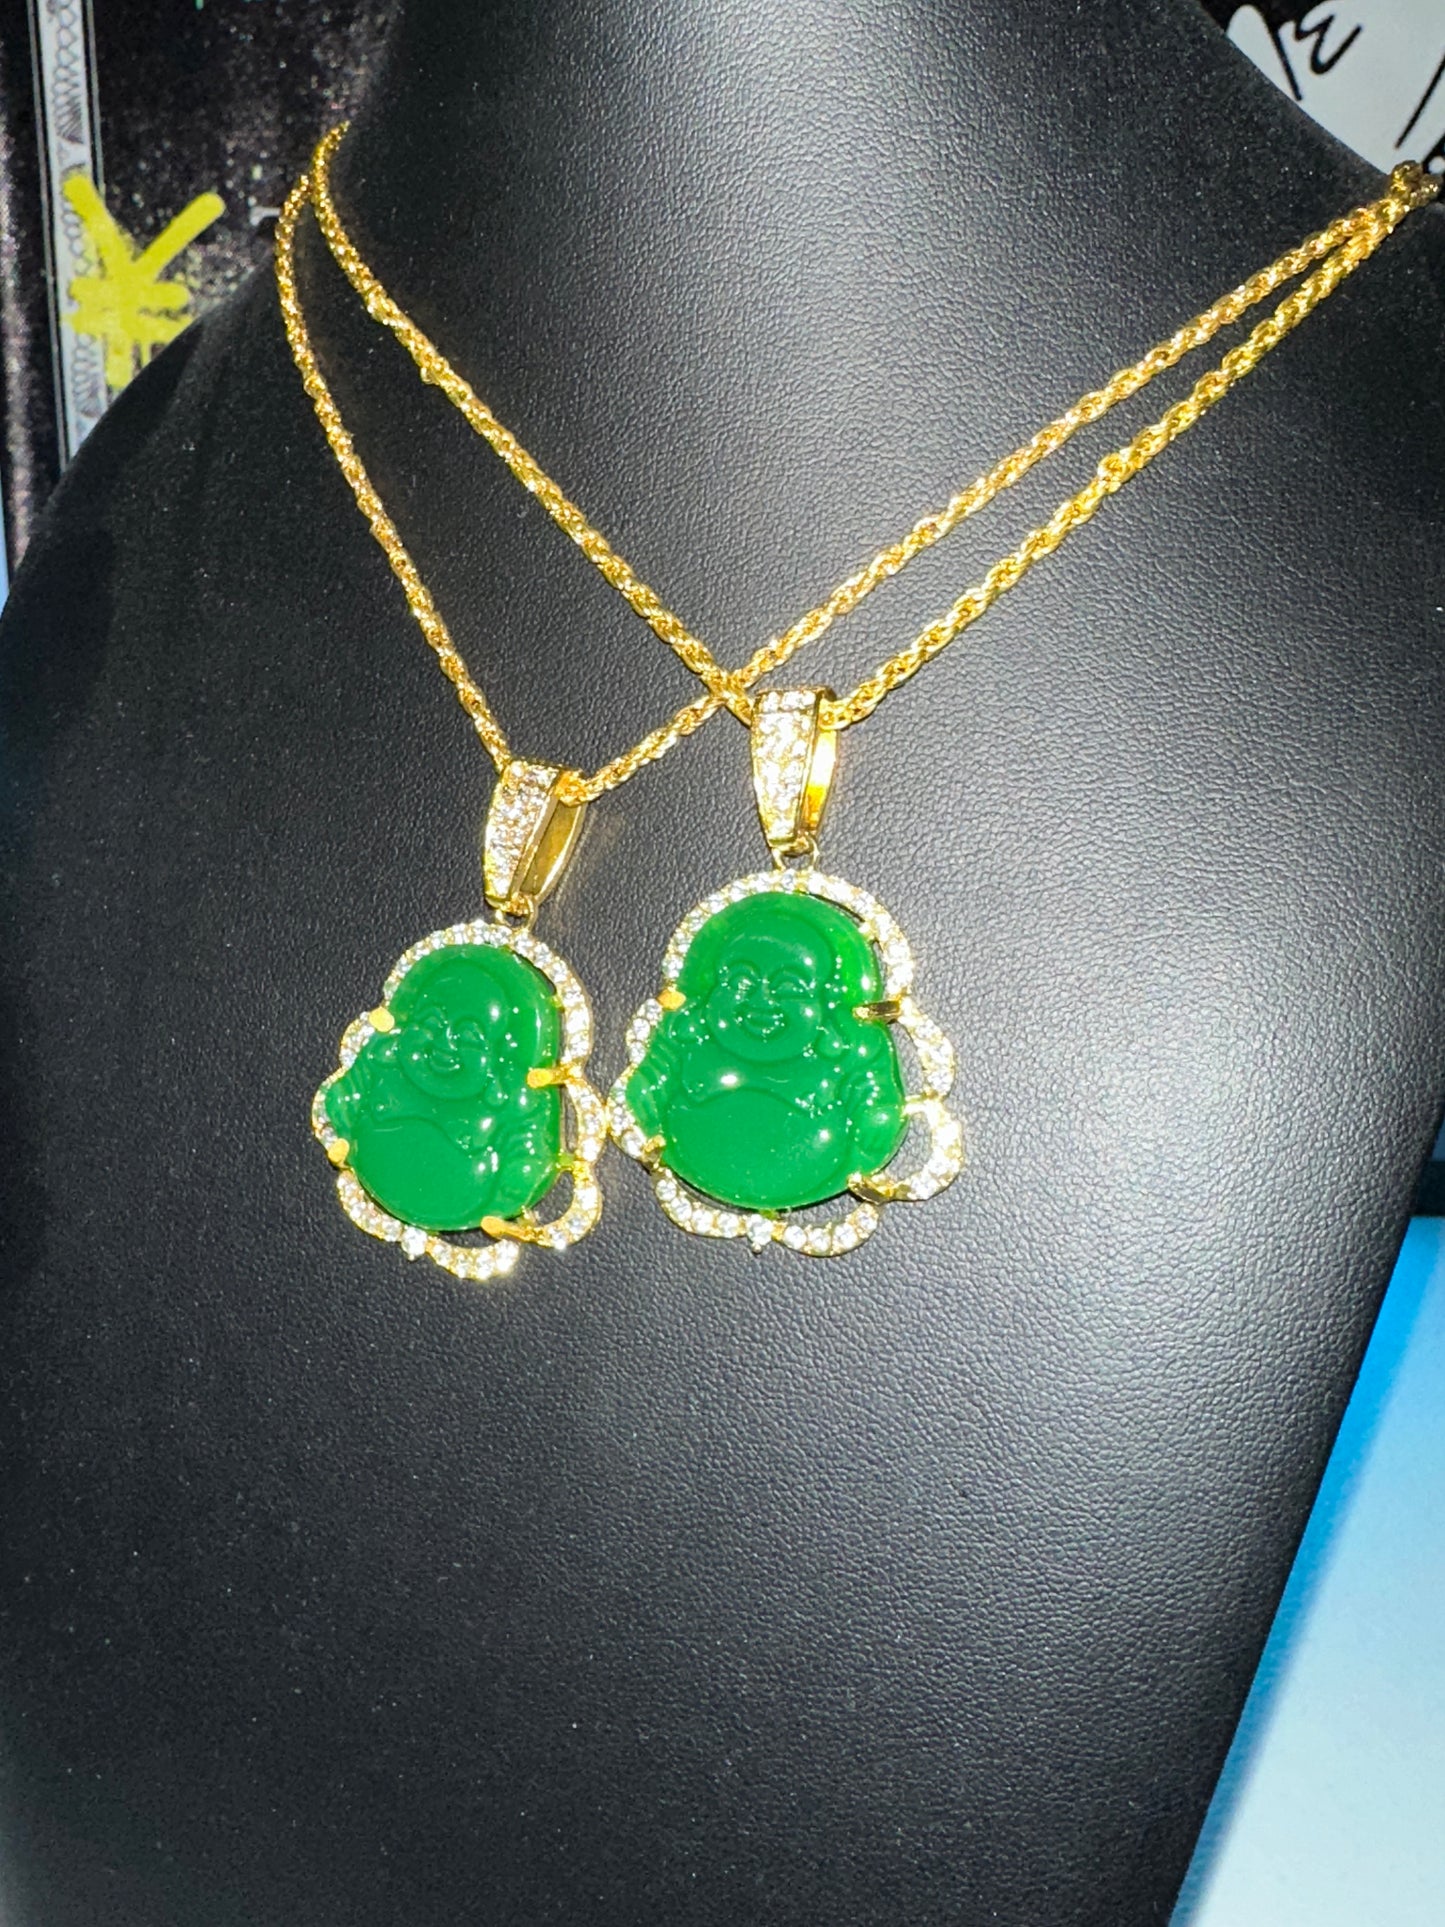 Budhaaa necklace